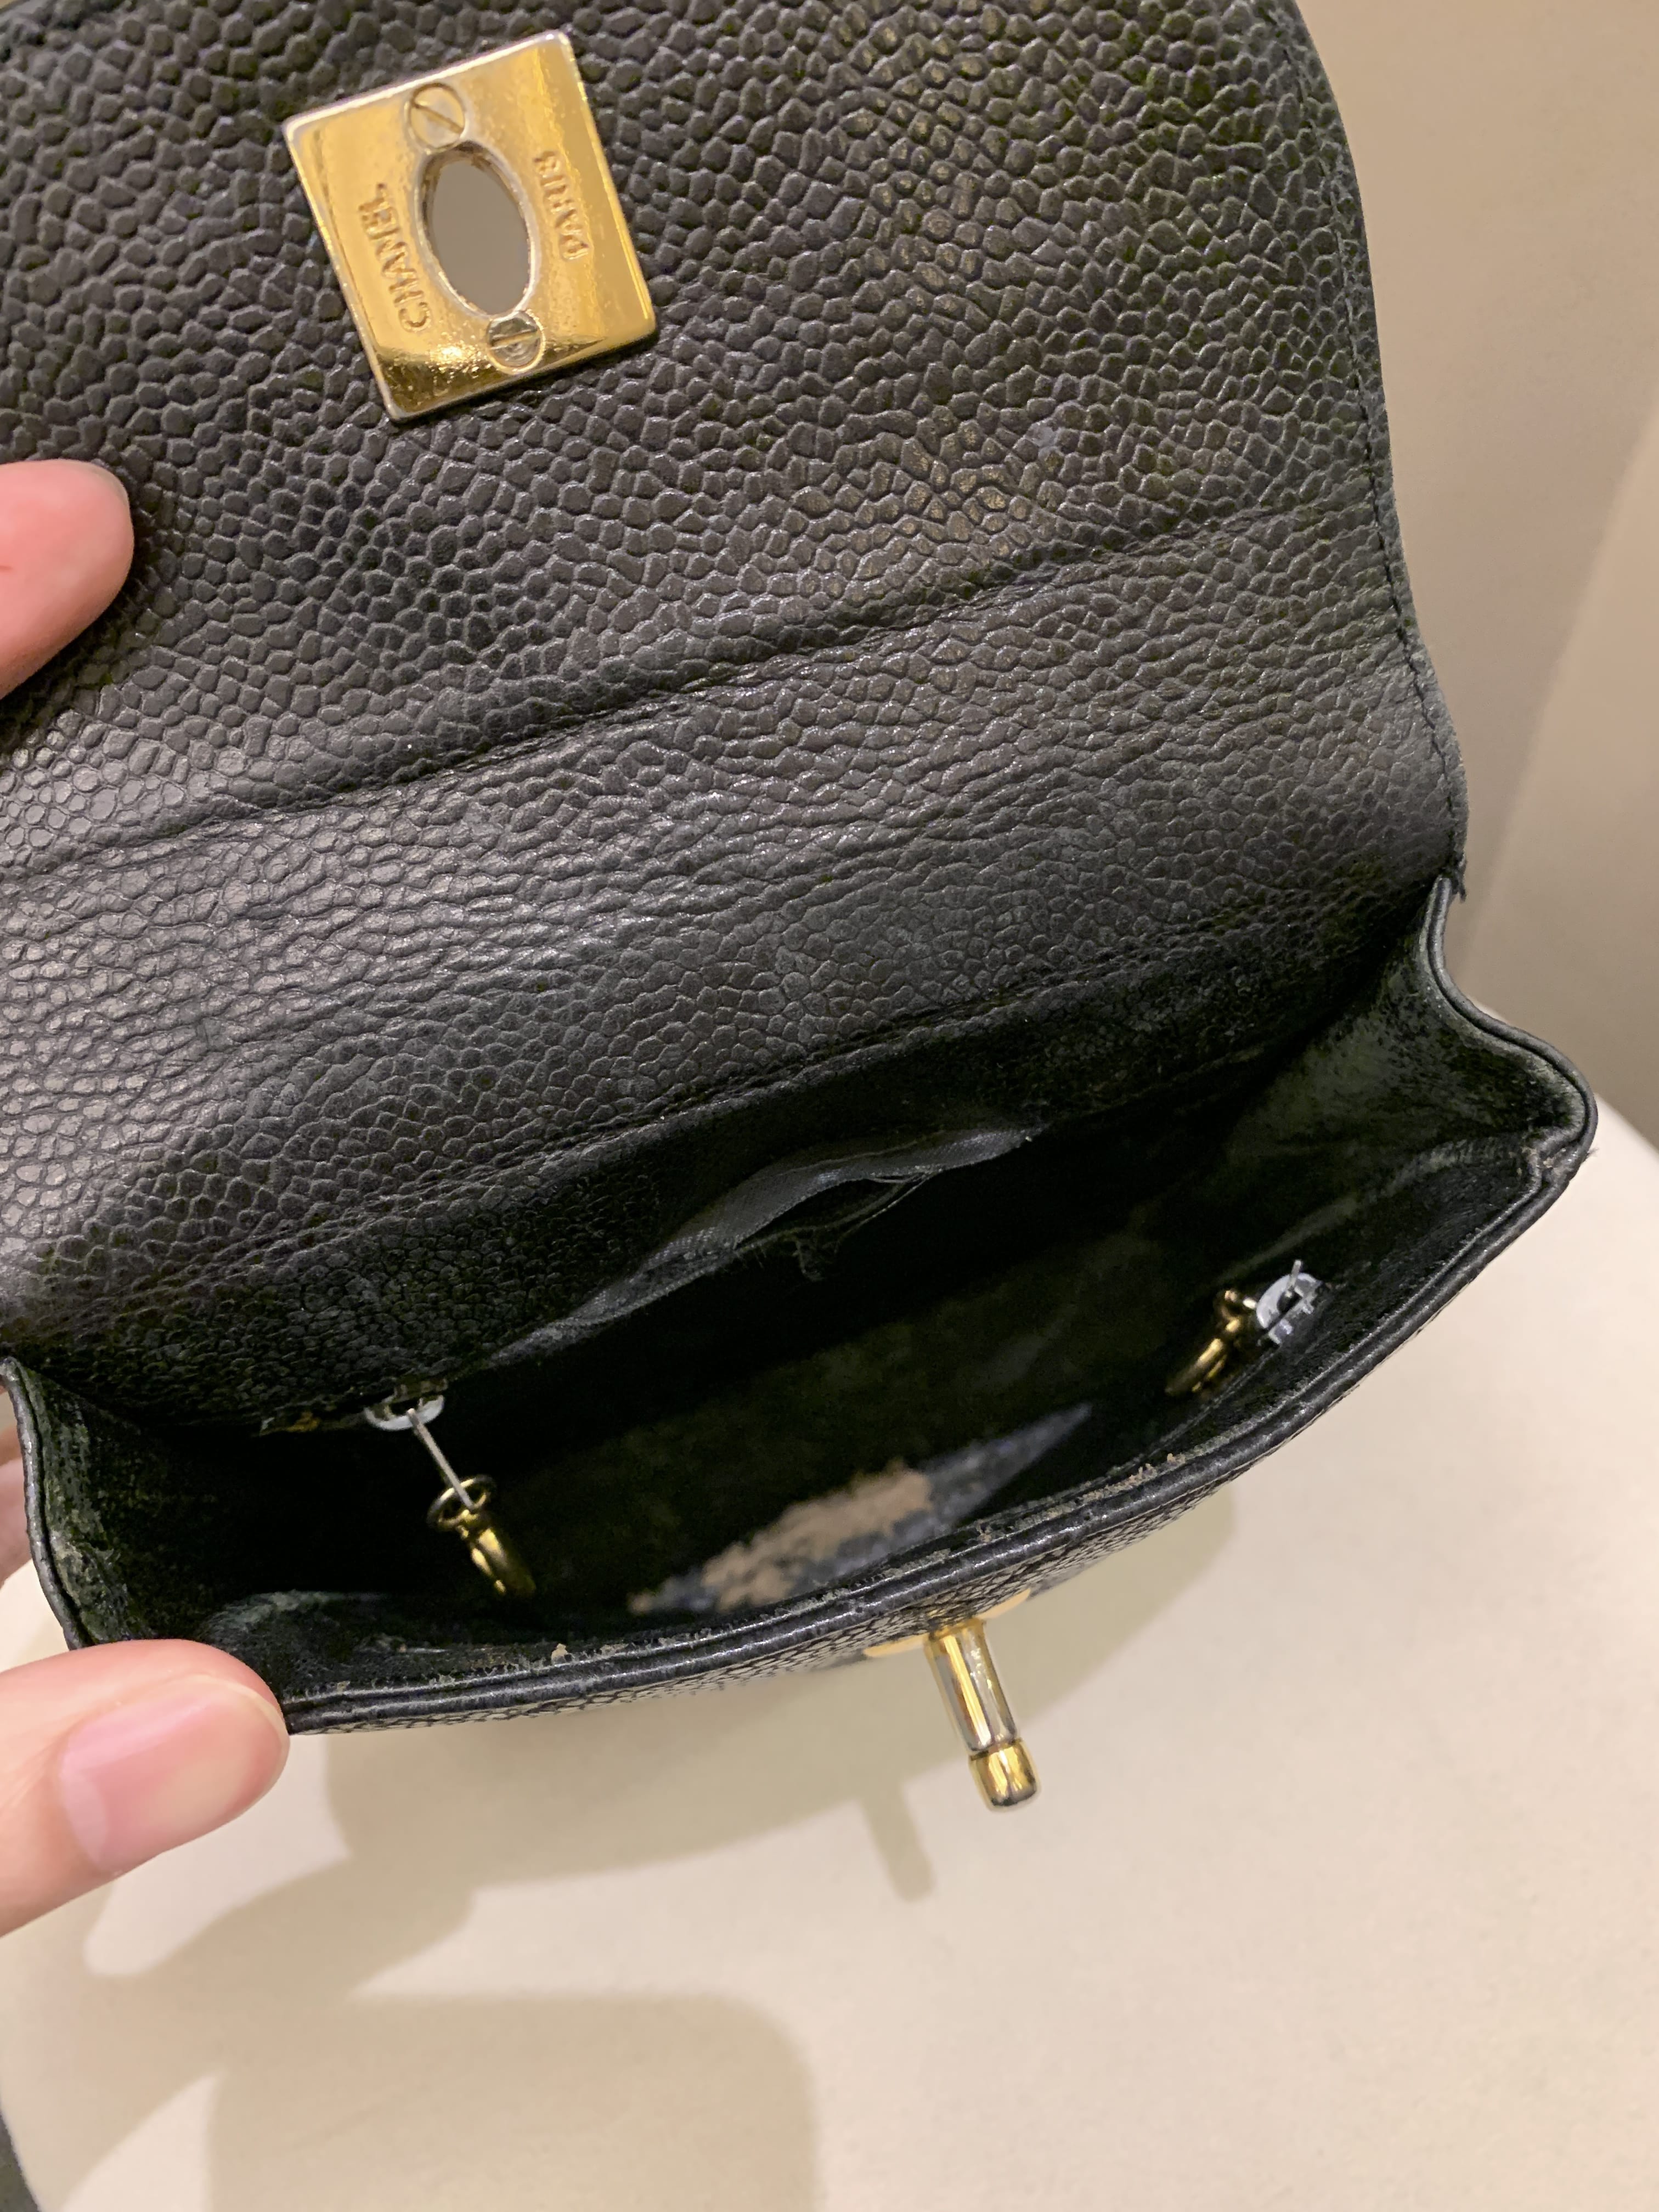 Chanel Vintage Quilted Cc Belt Bag Black Caviar